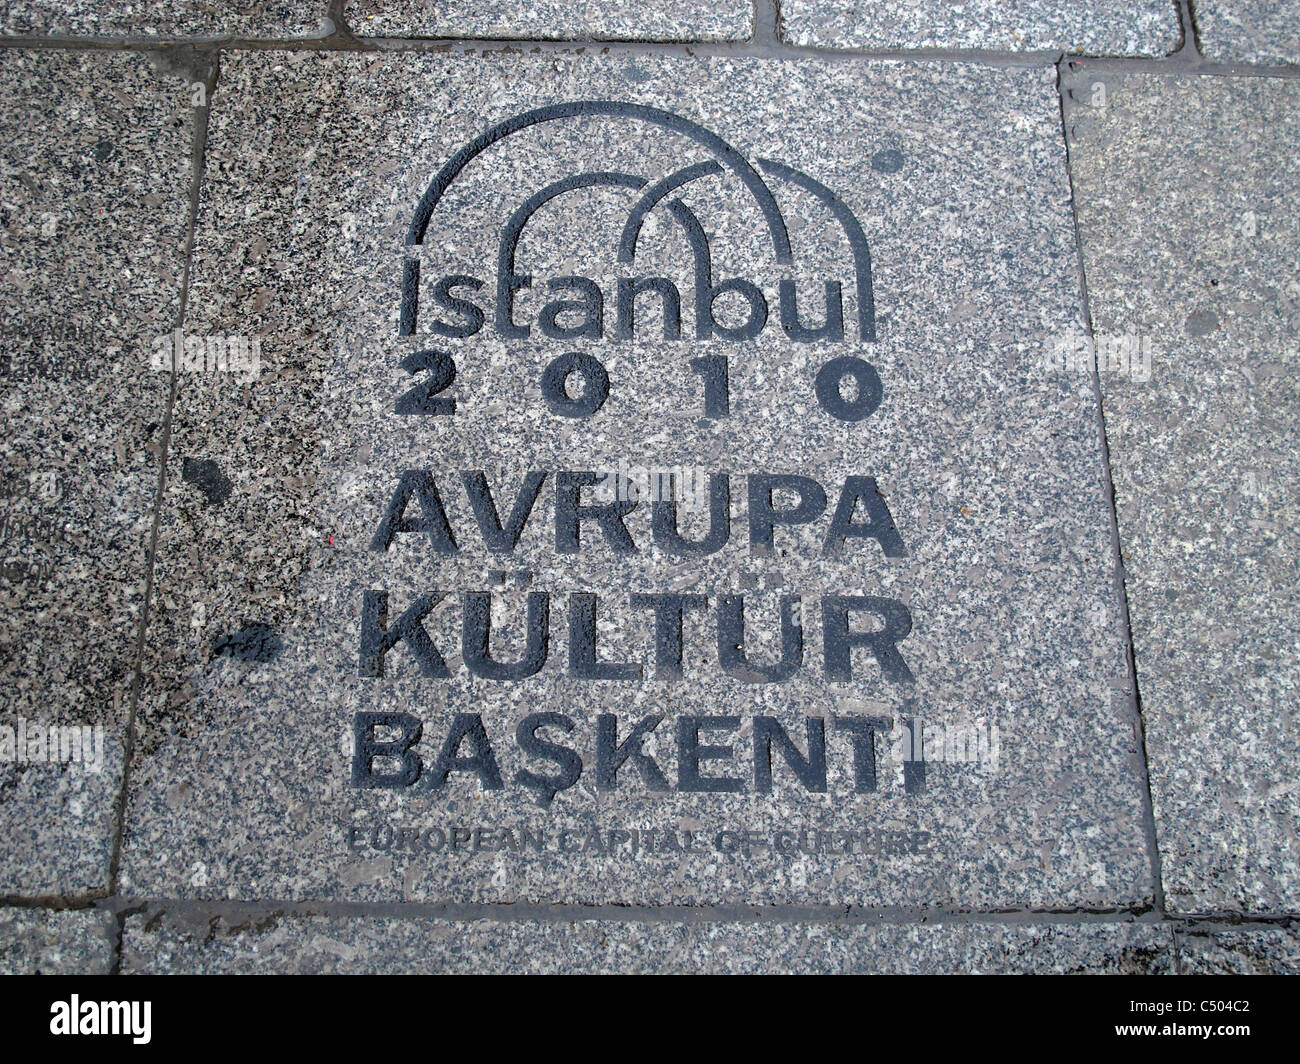 Turquia Estambul Europa ciudad cultural Foto de stock